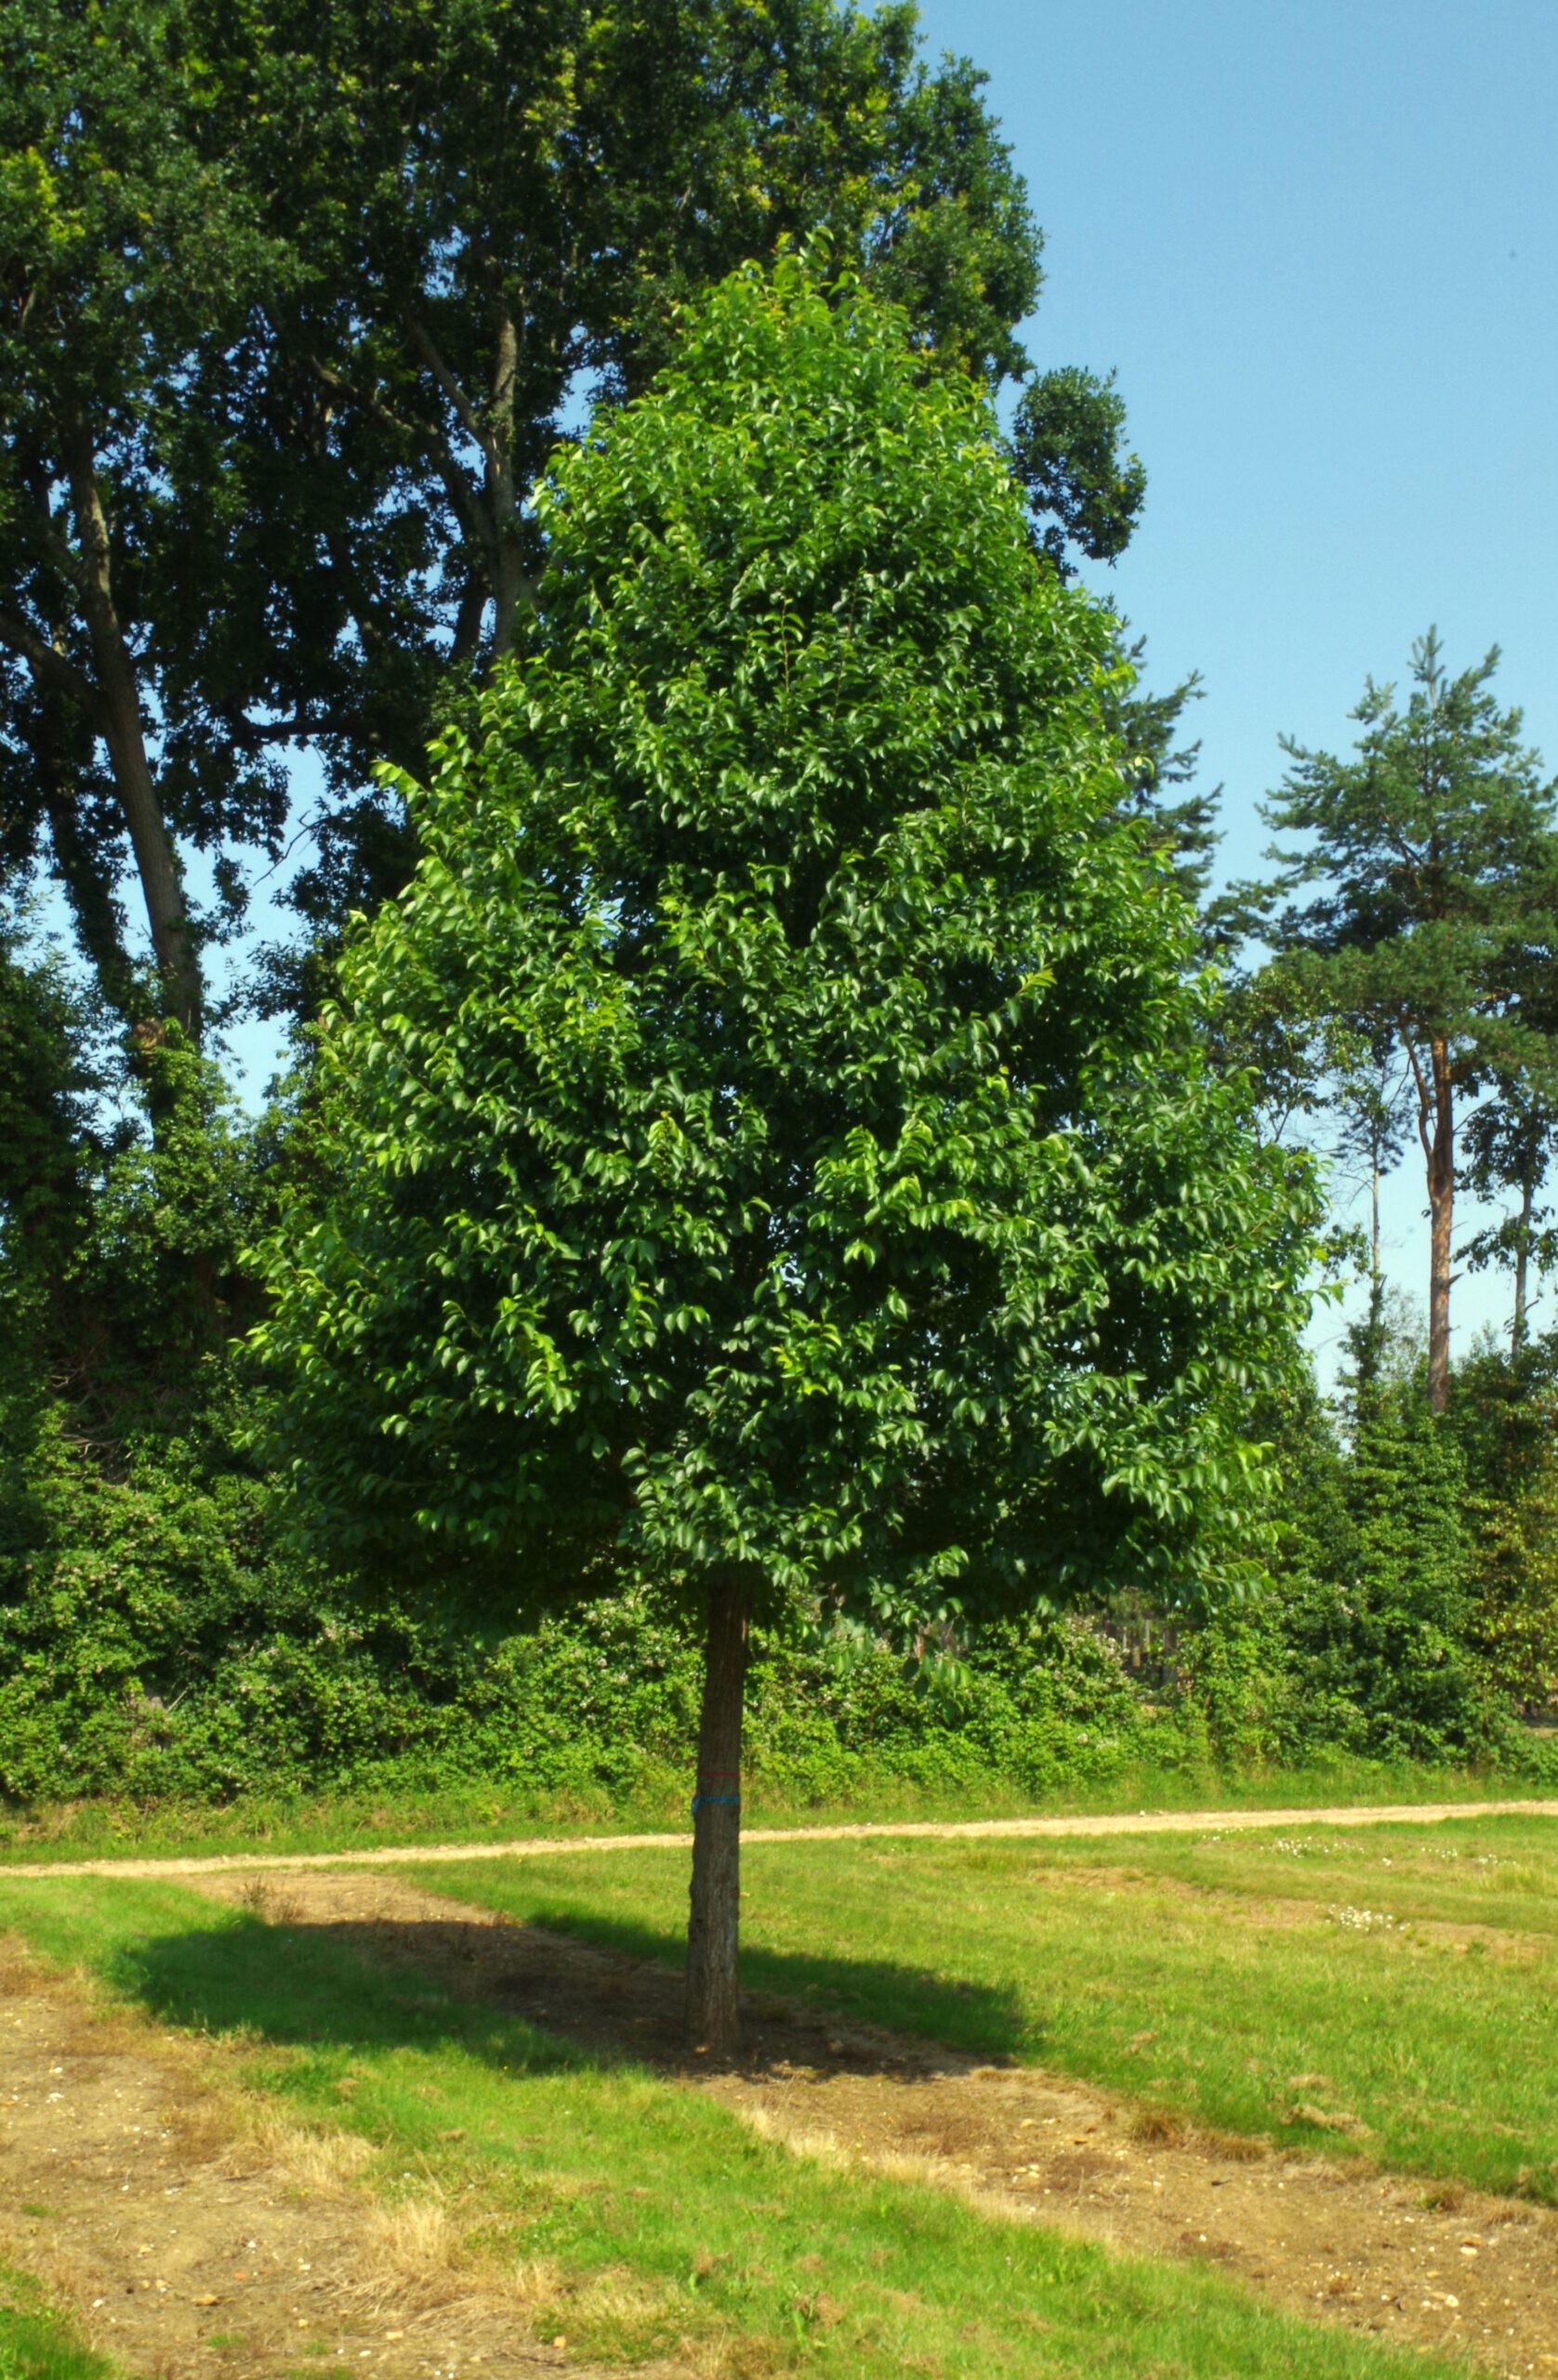 Ulmus rebona elm tree in field